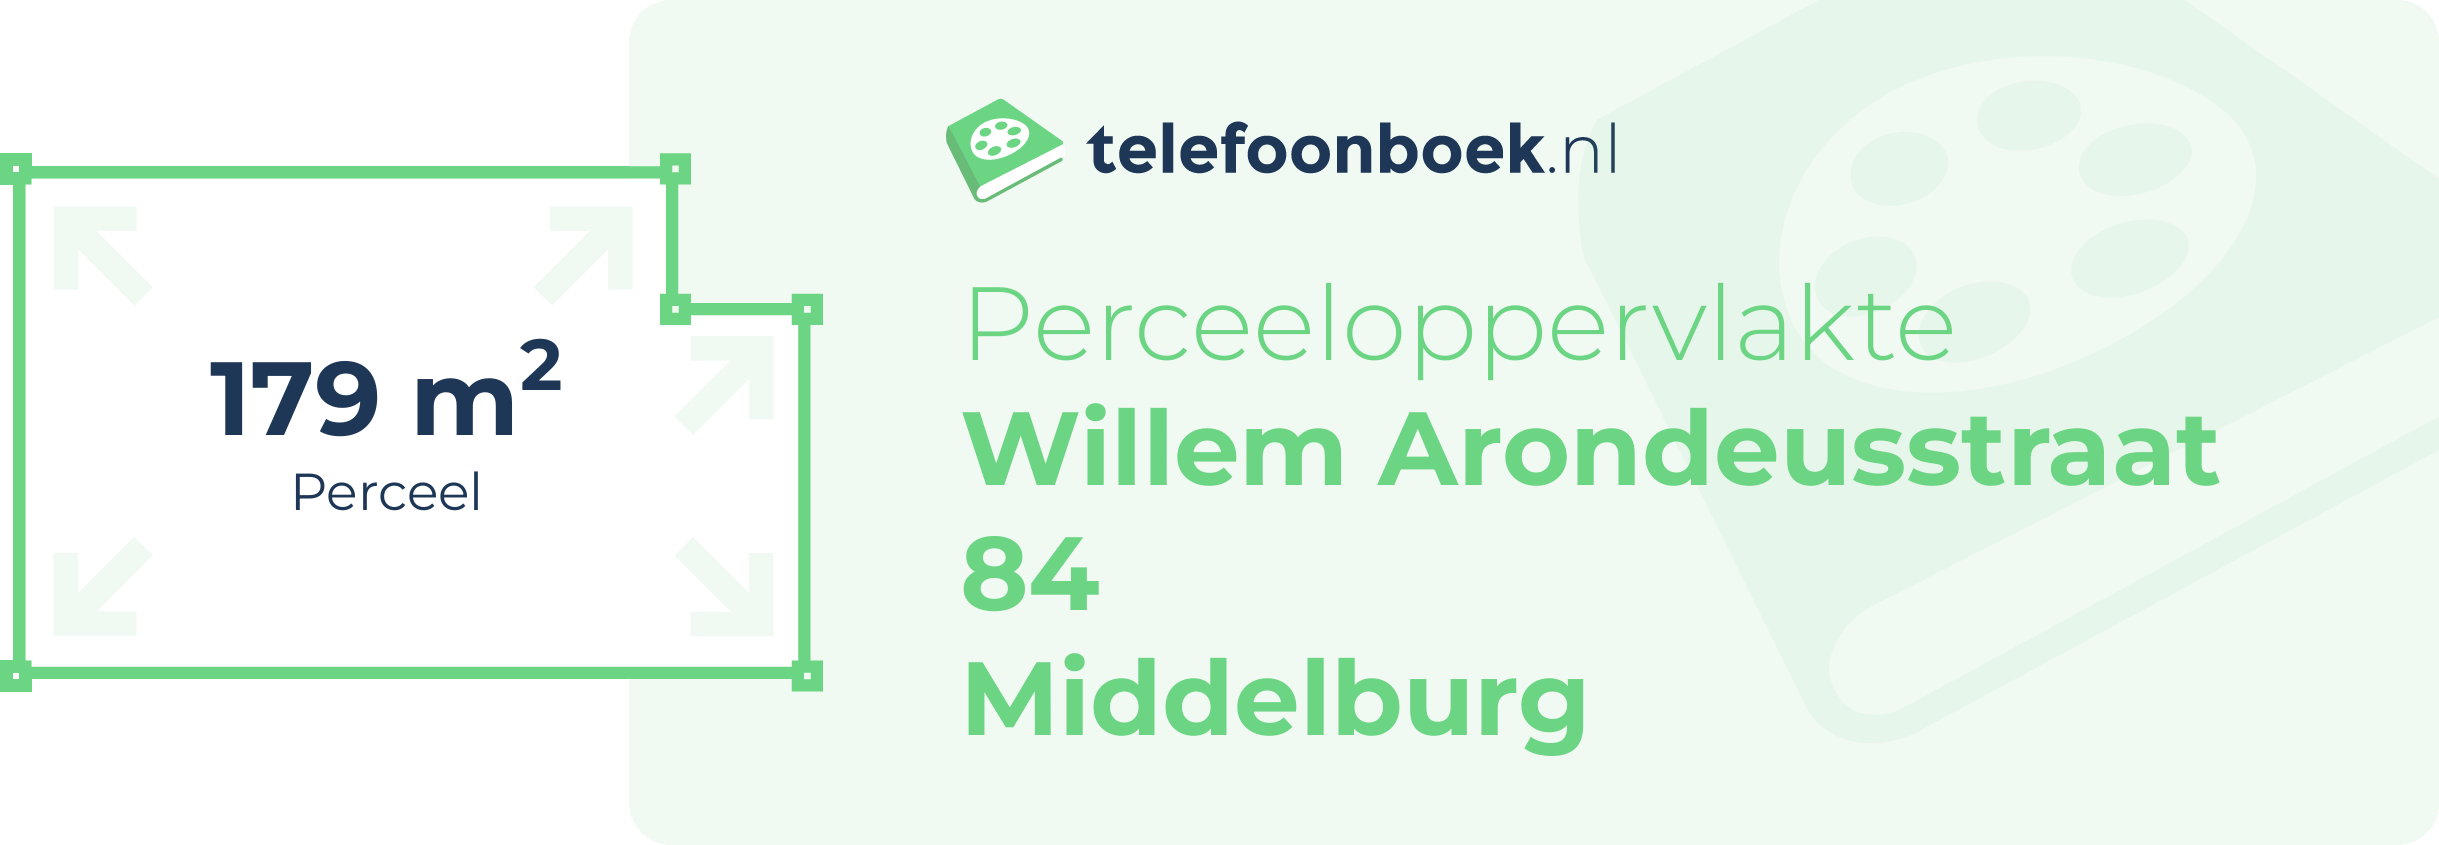 Perceeloppervlakte Willem Arondeusstraat 84 Middelburg